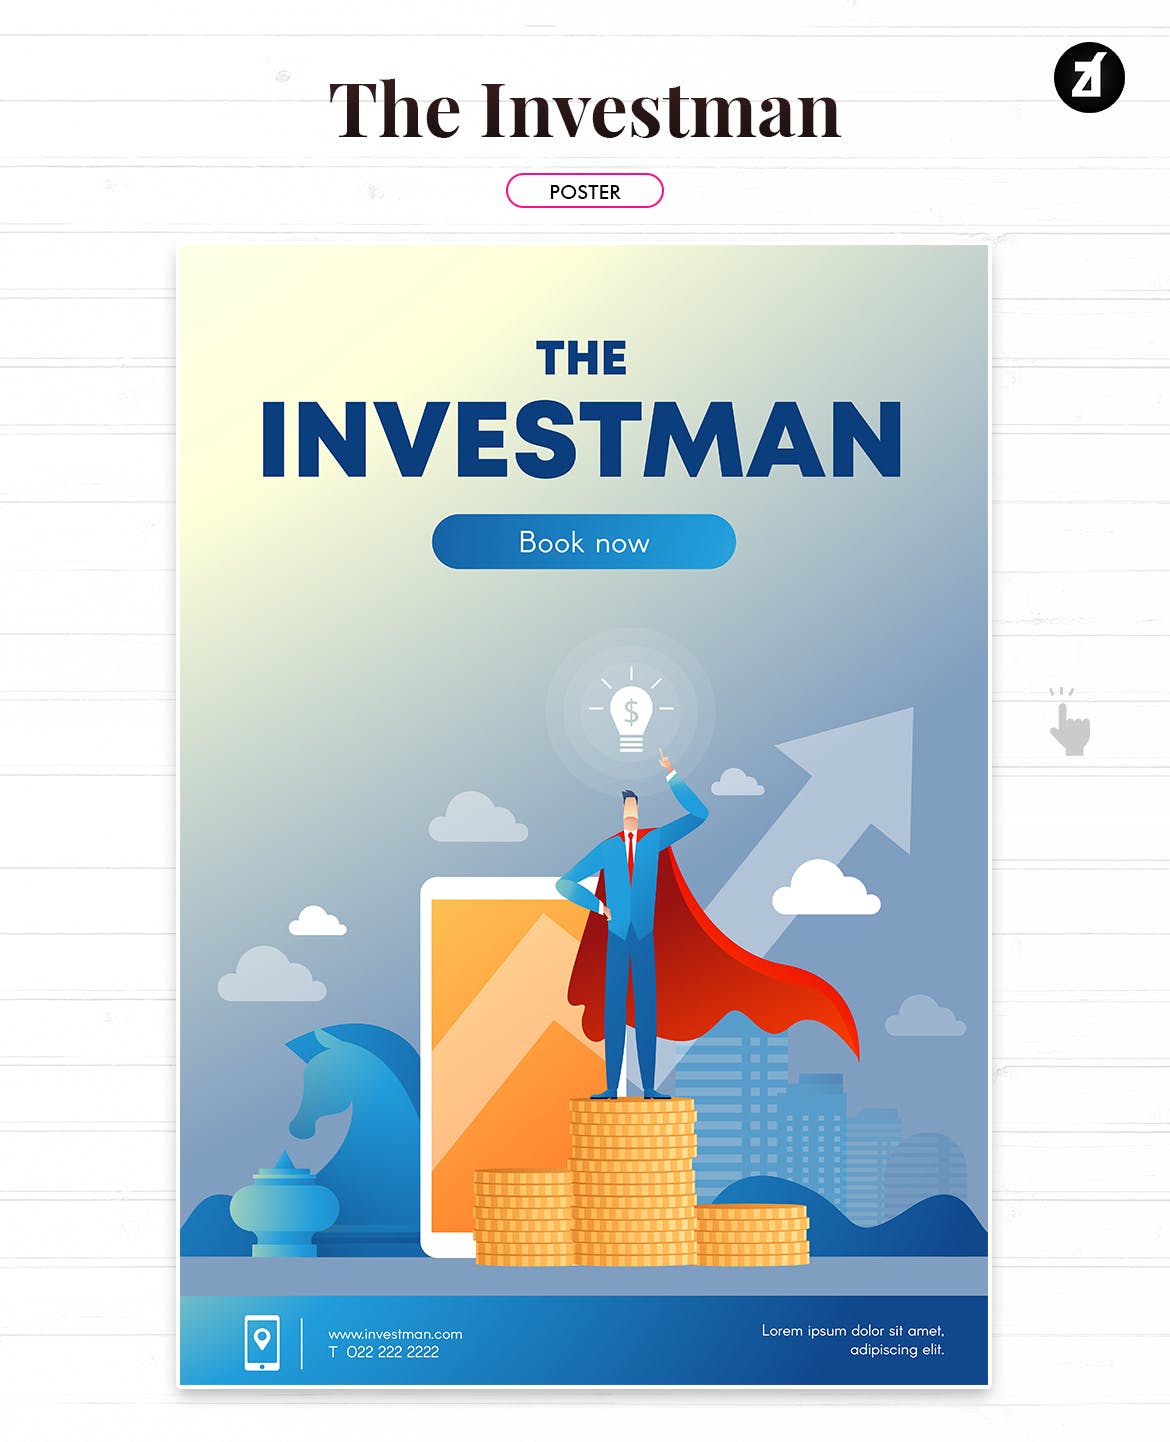 投资者主题矢量第一素材精选概念插画素材 The investman illustration with text layout插图(1)